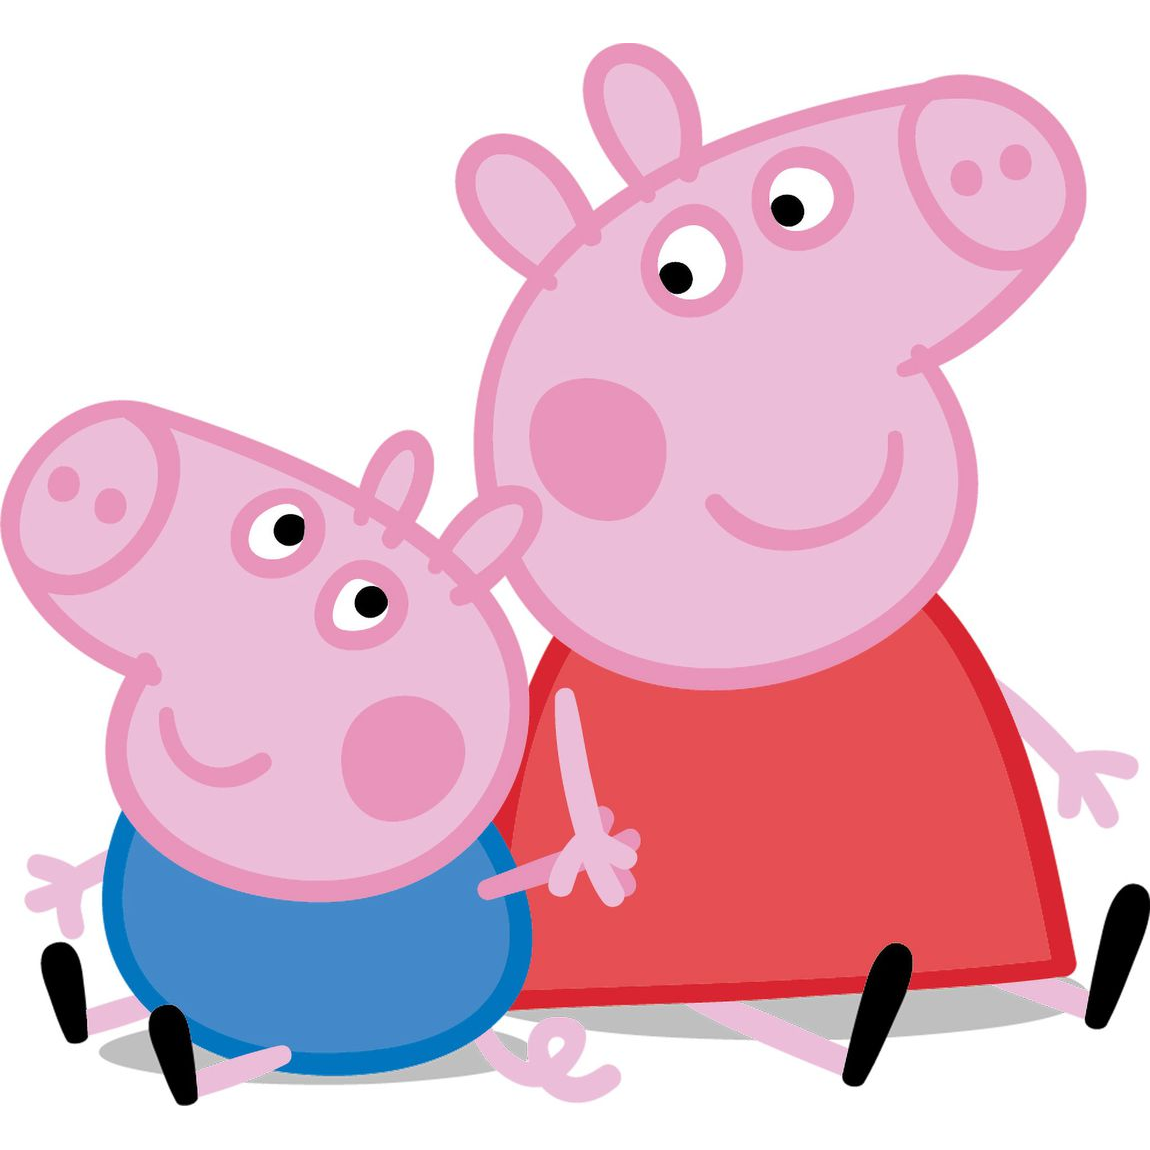 SUPER RTL Licensing gewinnt neue Partner für die Erfolgslizenz Peppa Pig